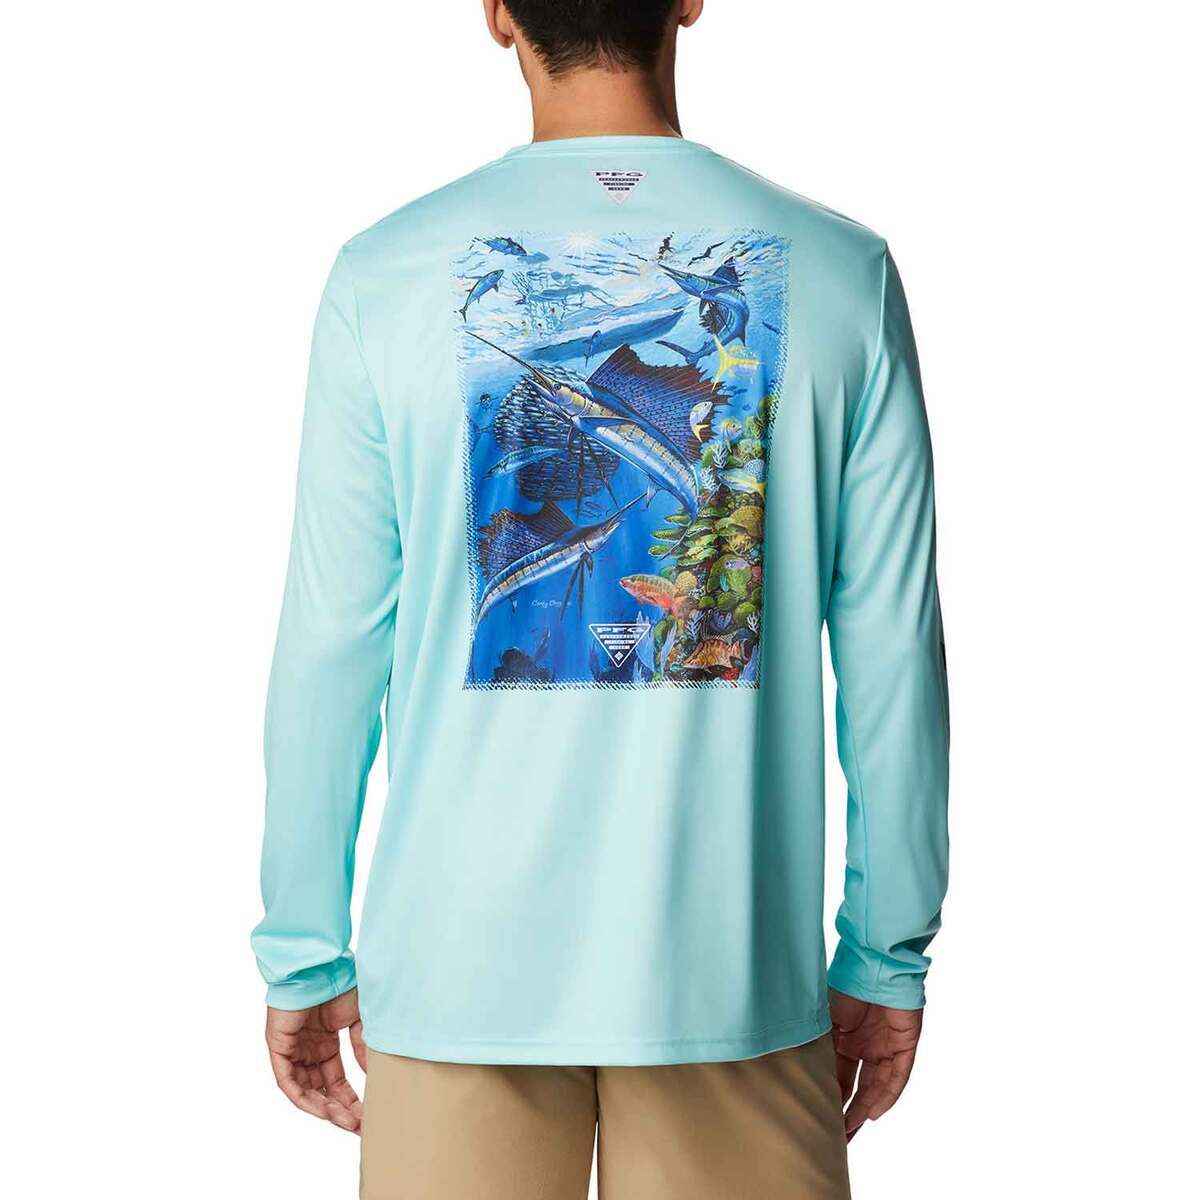 https://www.sportsmans.com/medias/columbia-mens-pfg-terminal-tackle-carey-chen-long-sleeve-fishing-shirt-gulf-streamvivid-blue-reef-cup-m-1763910-1.jpg?context=bWFzdGVyfGltYWdlc3w3OTkyOHxpbWFnZS9qcGVnfGFHTmlMMmhoT1M4eE1EY3pNREEyTXpJMk5UZ3lNaTh4TnpZek9URXdMVEZmWW1GelpTMWpiMjUyWlhKemFXOXVSbTl5YldGMFh6RXlNREF0WTI5dWRtVnljMmx2YmtadmNtMWhkQXw2YzAxODZmYWE5MDNkODRhN2QwZTc1ZmM2MDFiMDYyYWFjOWFkNzAzZjI5ZjRkNjhkYjBiMzYwZmFkM2Q4OTAw